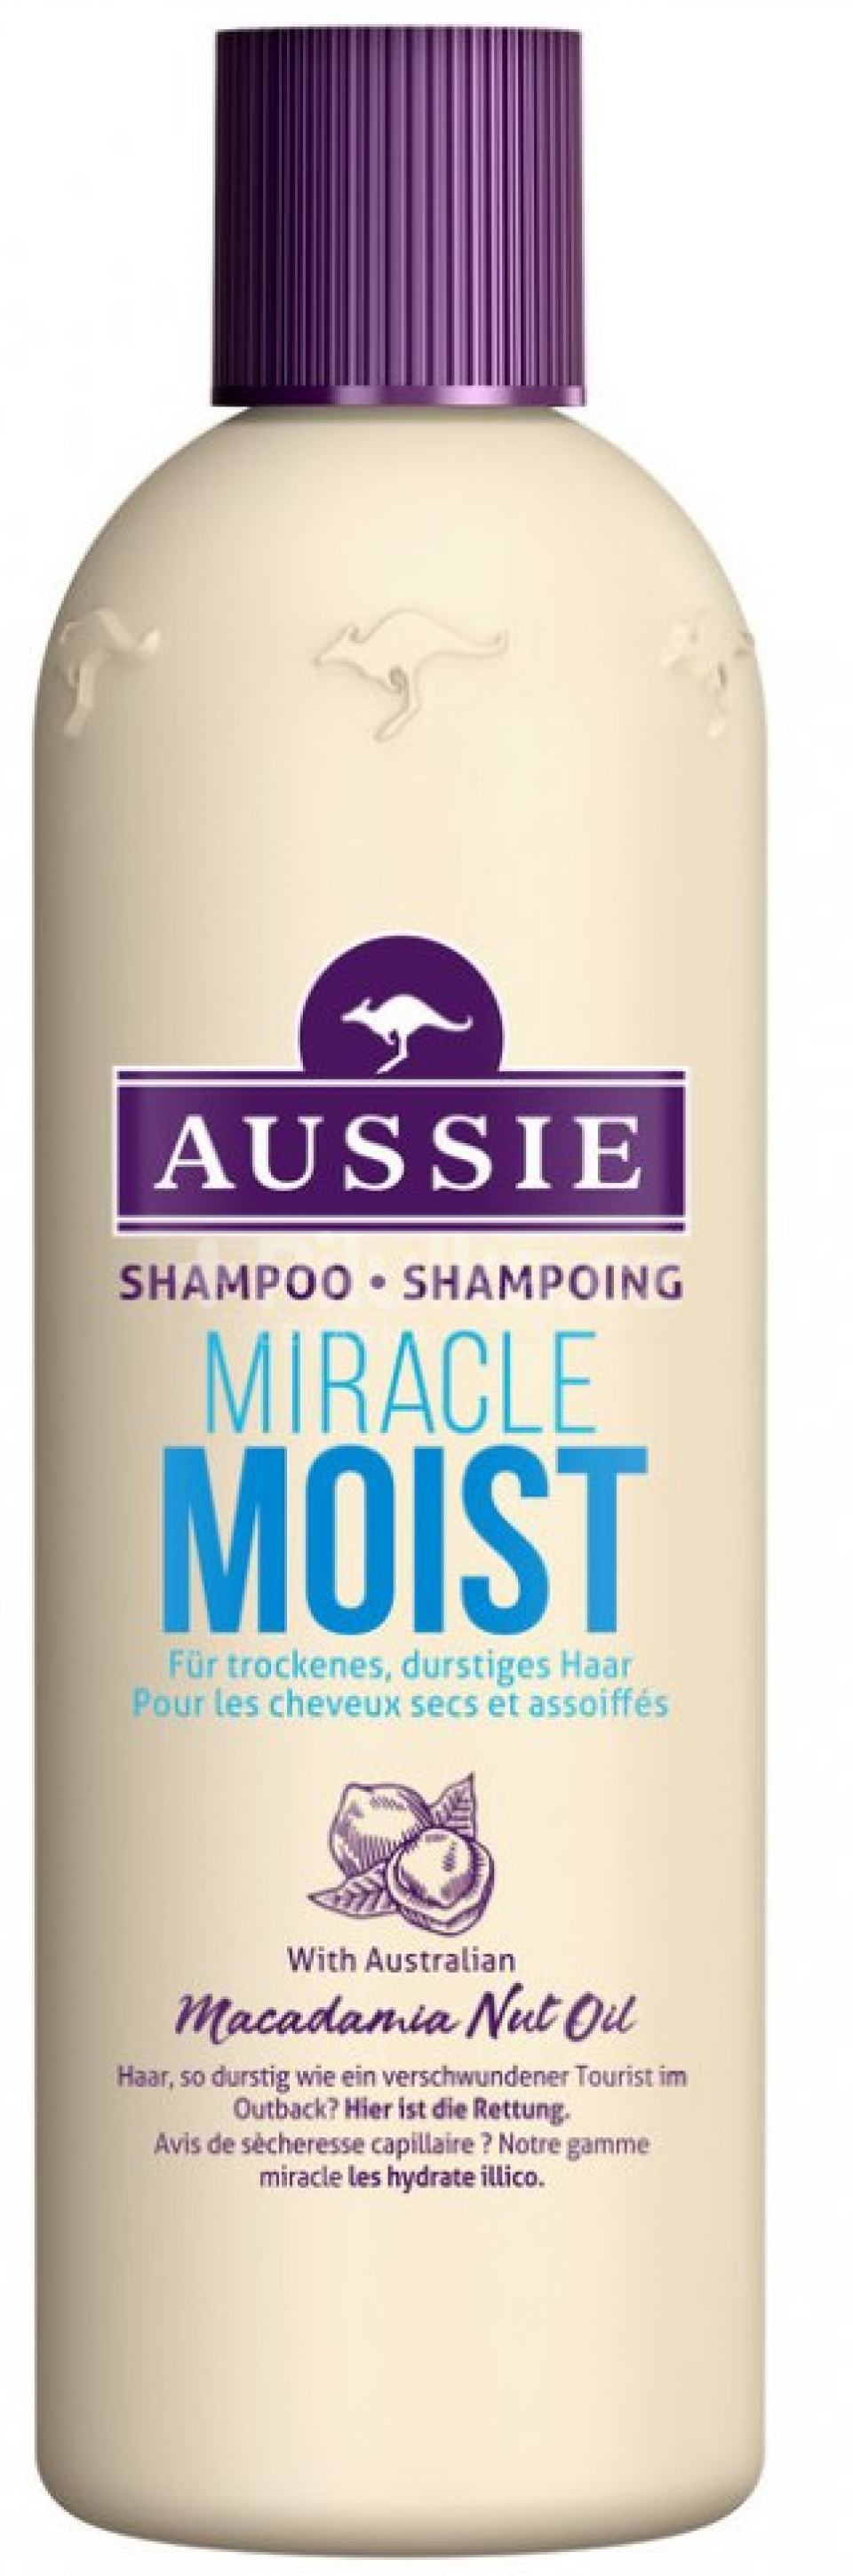 16 aussie-shampoo-moist-sam1.jpg